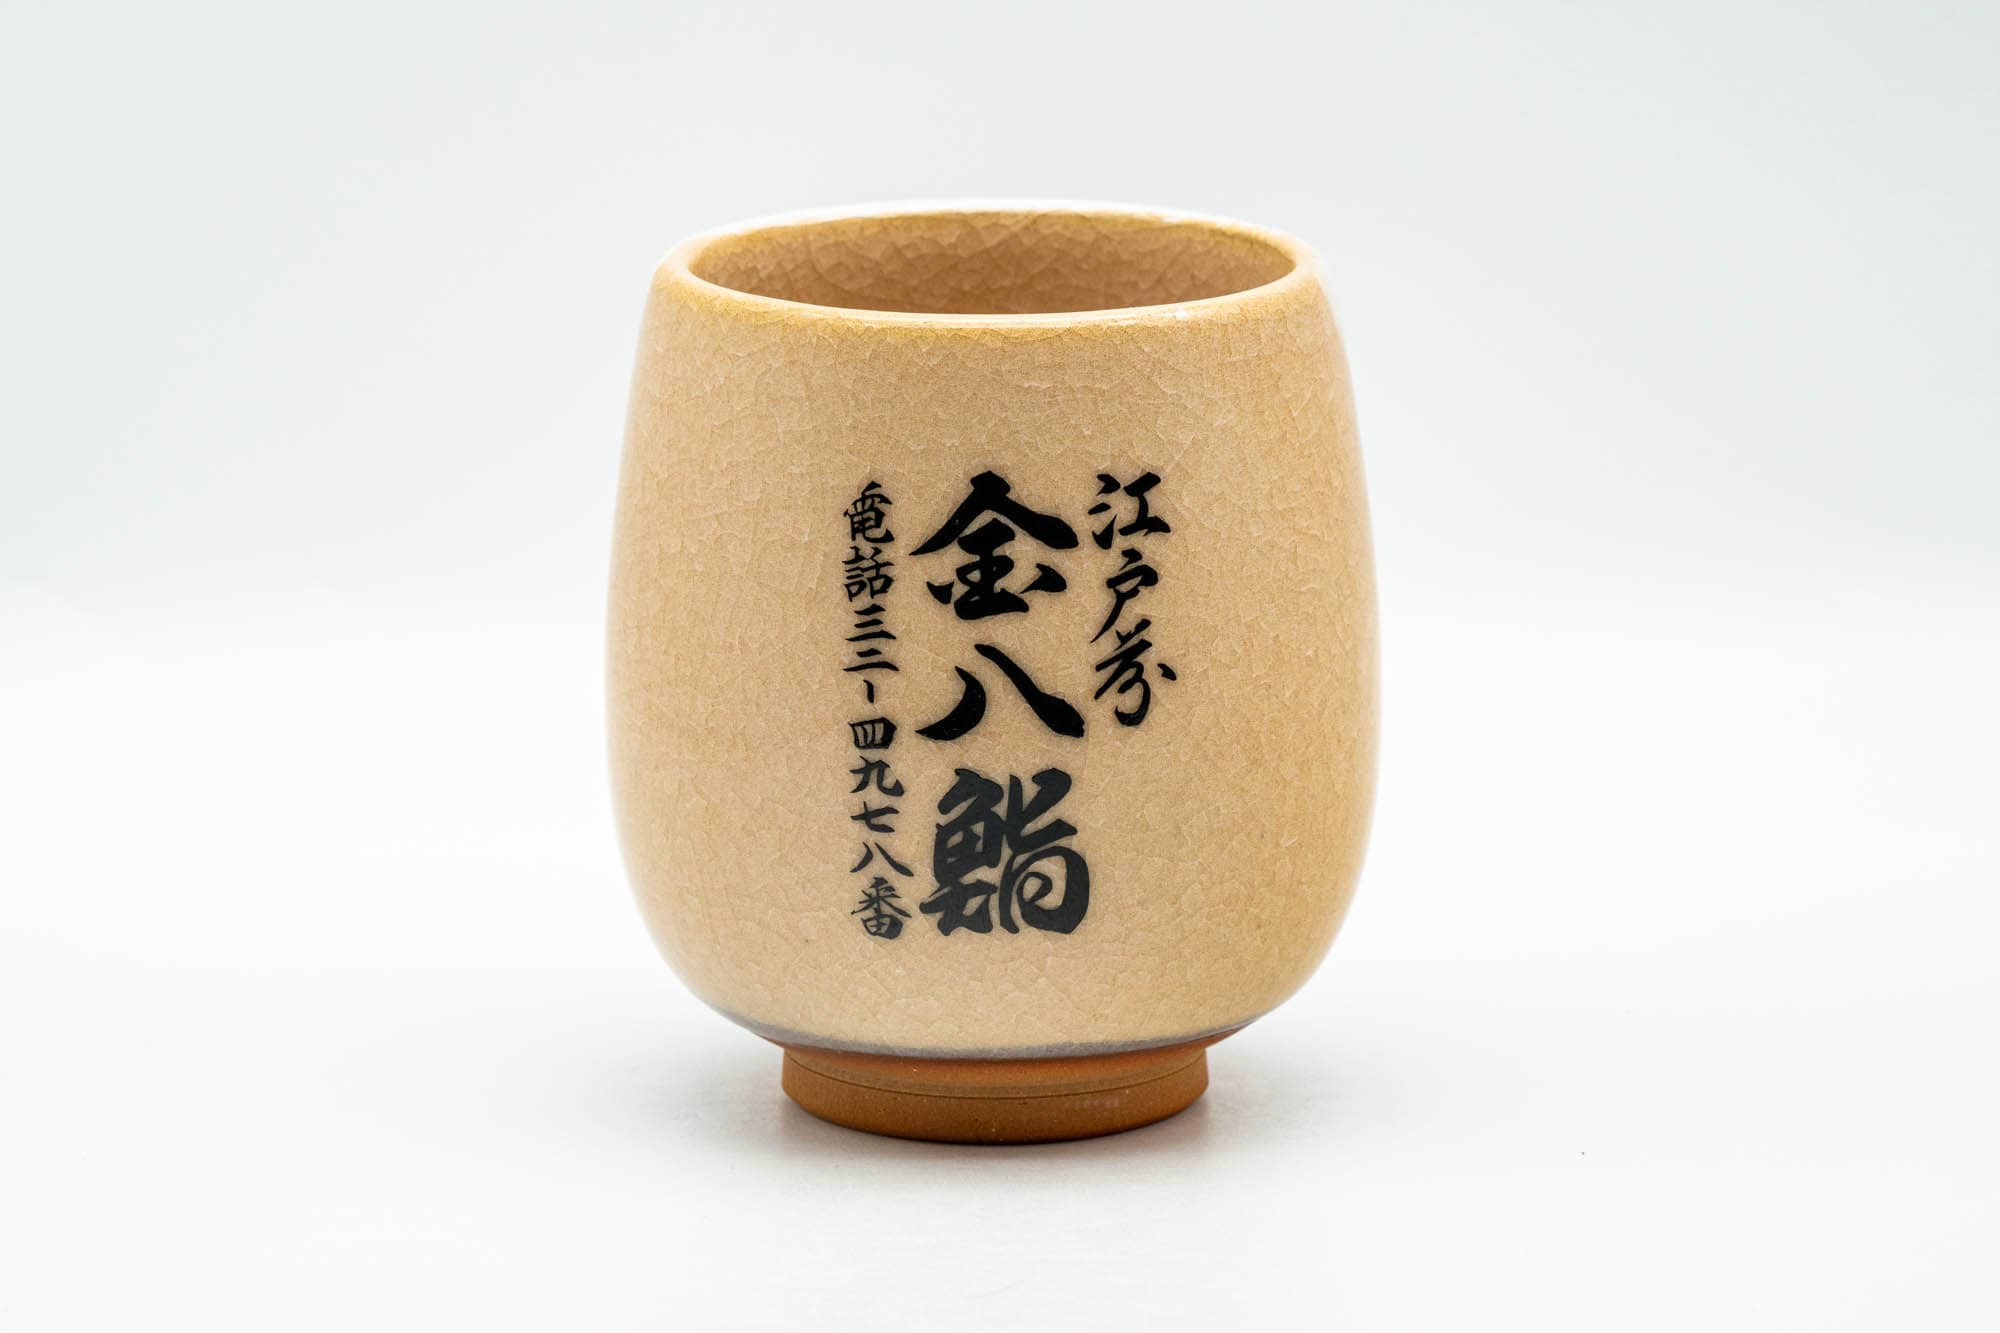 Japanese Teacup - Large Floral Kanji Orange Celadon Glazed Yunomi - 260ml